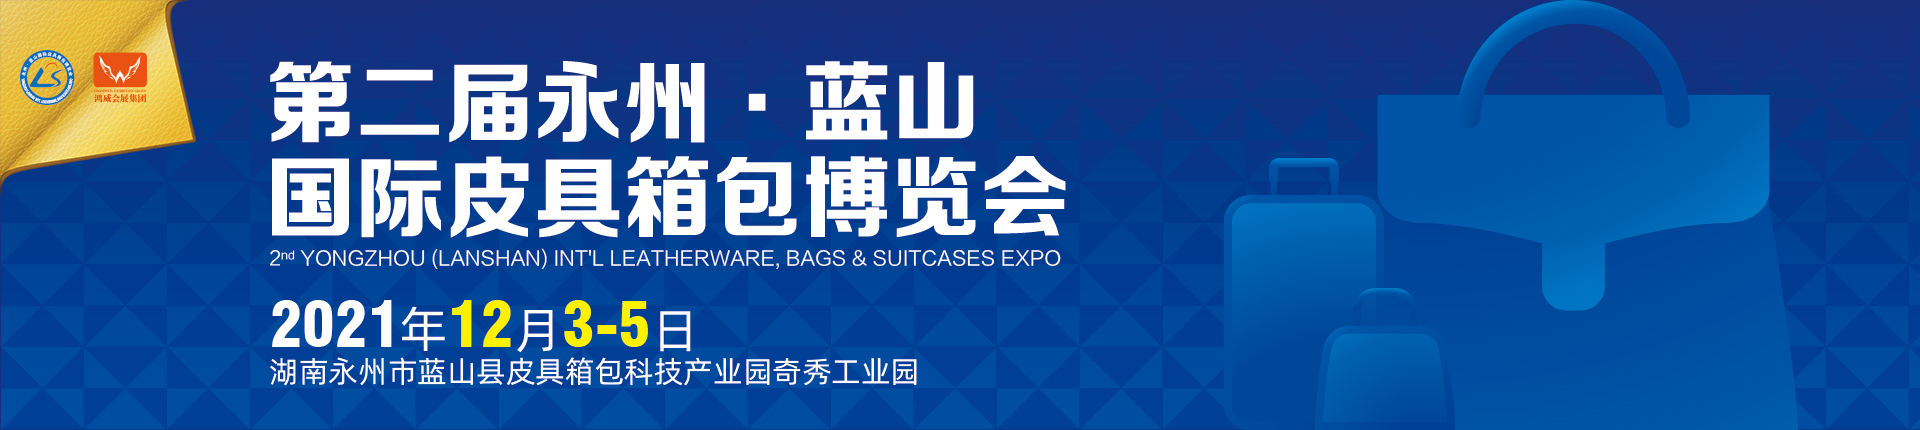 第二届永州·蓝山国际皮具箱包博览会